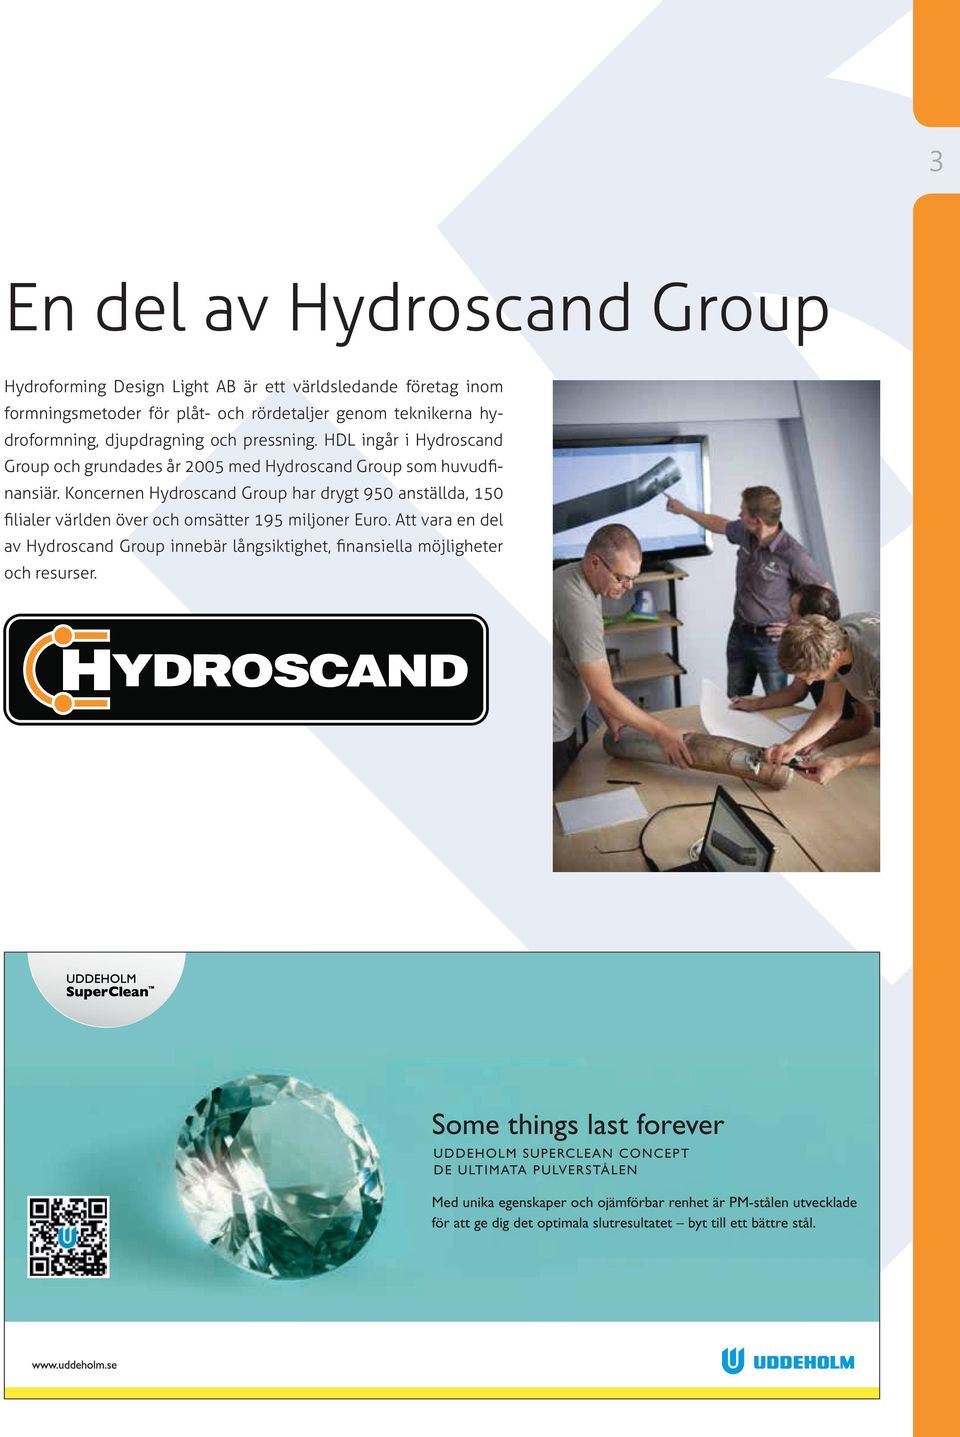 HDL ingår i Hydroscand Group och grundades år 2005 med Hydroscand Group som huvudfinansiär.